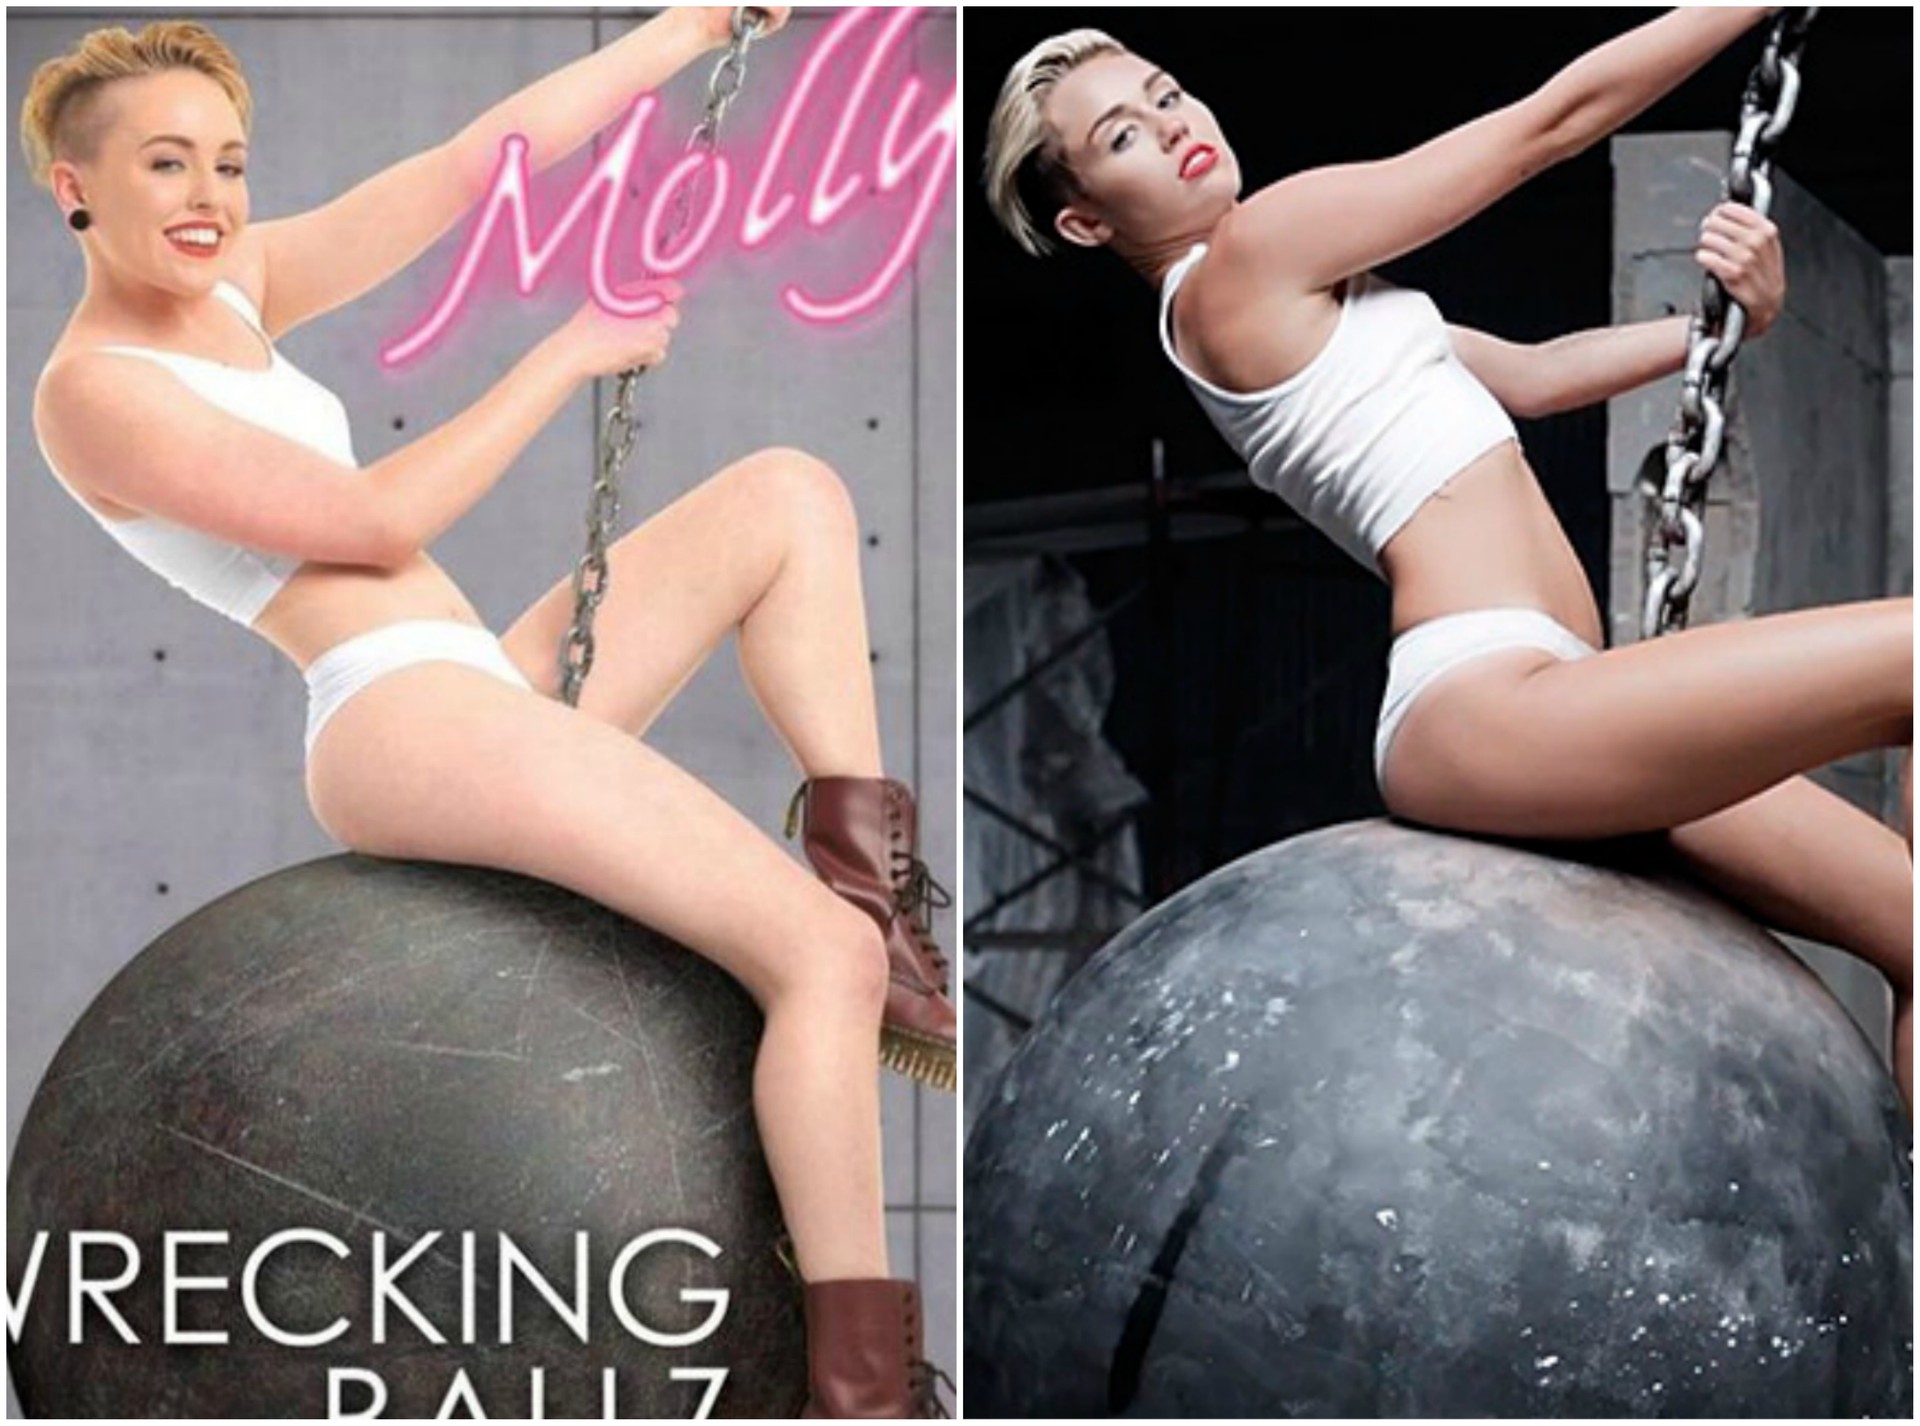 Detalhe do cartaz de 'Wrecking Ballz' (à esq.) e Miley Cyrus em cena do clipe de 'Wrecking Ball'. (Foto: Reprodução)